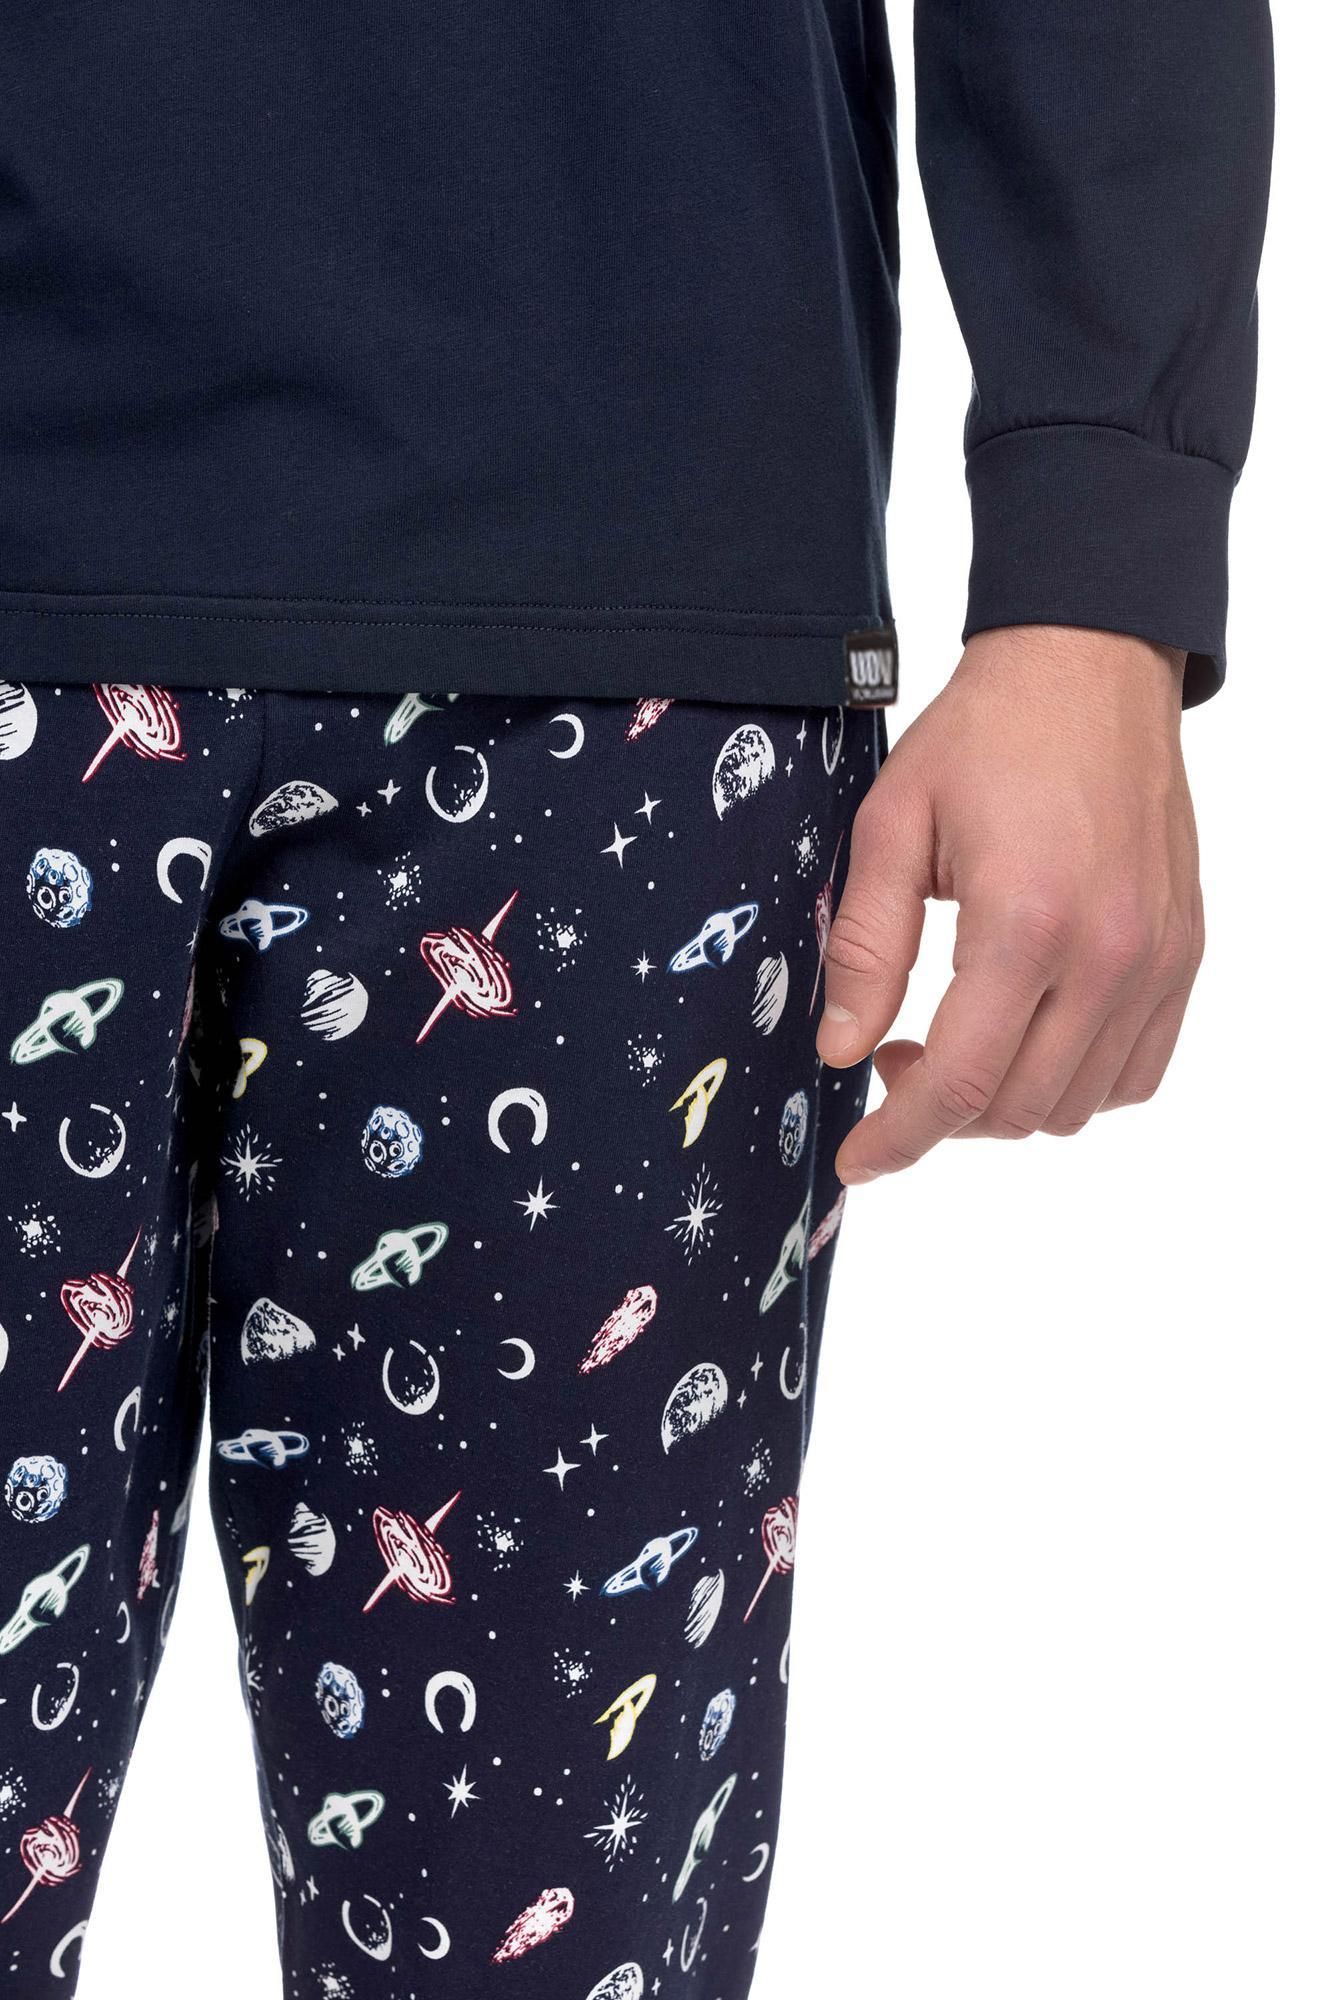 Herren-Pyjamas mit Planeten